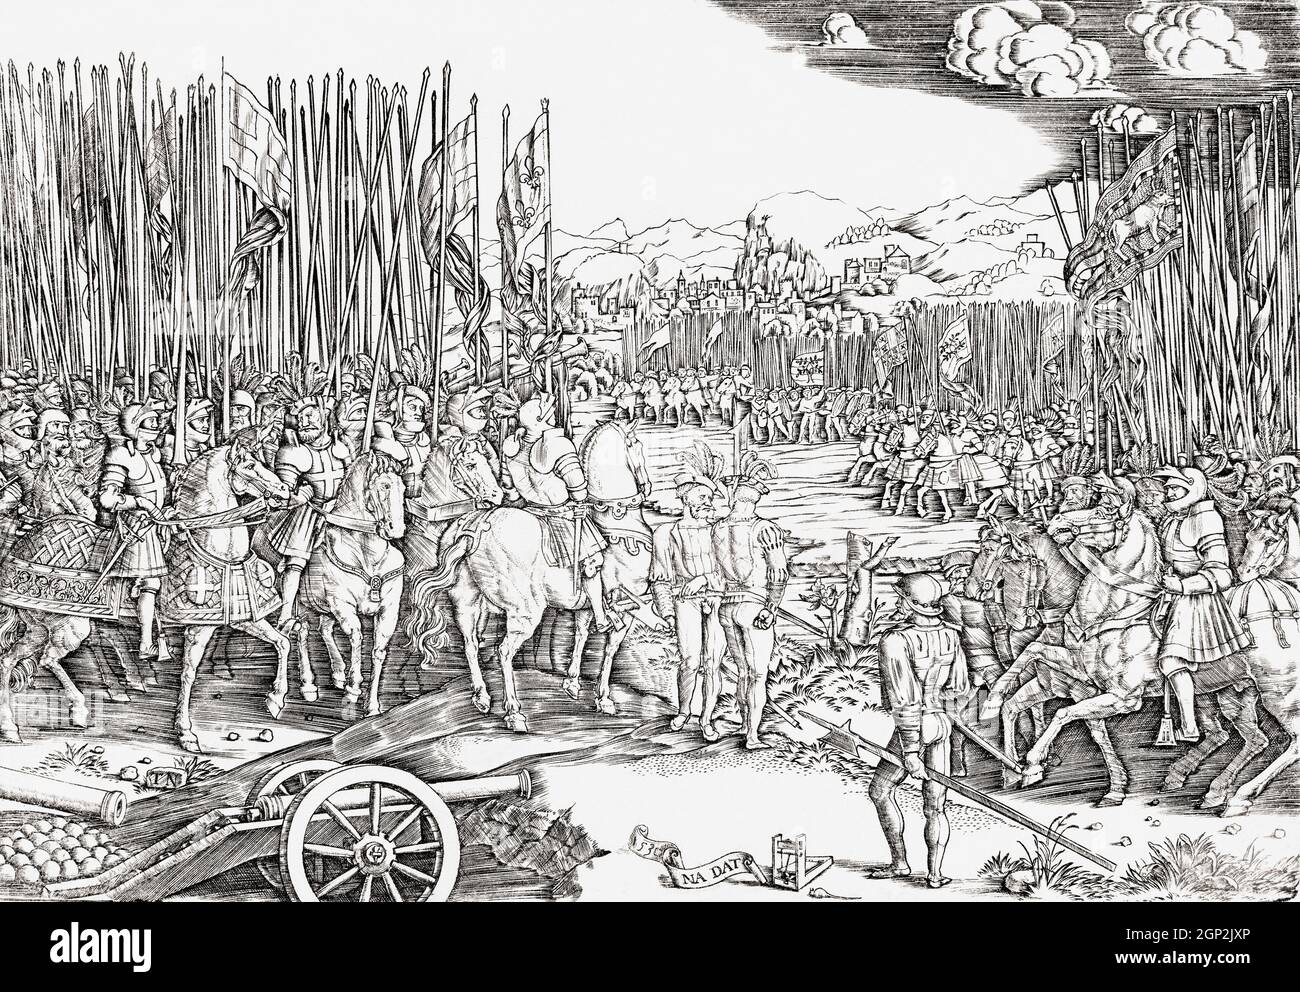 Die Schlacht von Ravenna, 11. April 1512 während des Krieges der Liga von Cambrai, oder Krieg der Heiligen Liga. Die Armee der päpstlichen Staaten und Spaniens, die Ravenna verteidigen (rechts), und die Armee Frankreichs und des Herzogtums Ferrara (links). Nach einer Arbeit aus dem 16. Jahrhundert. Stockfoto